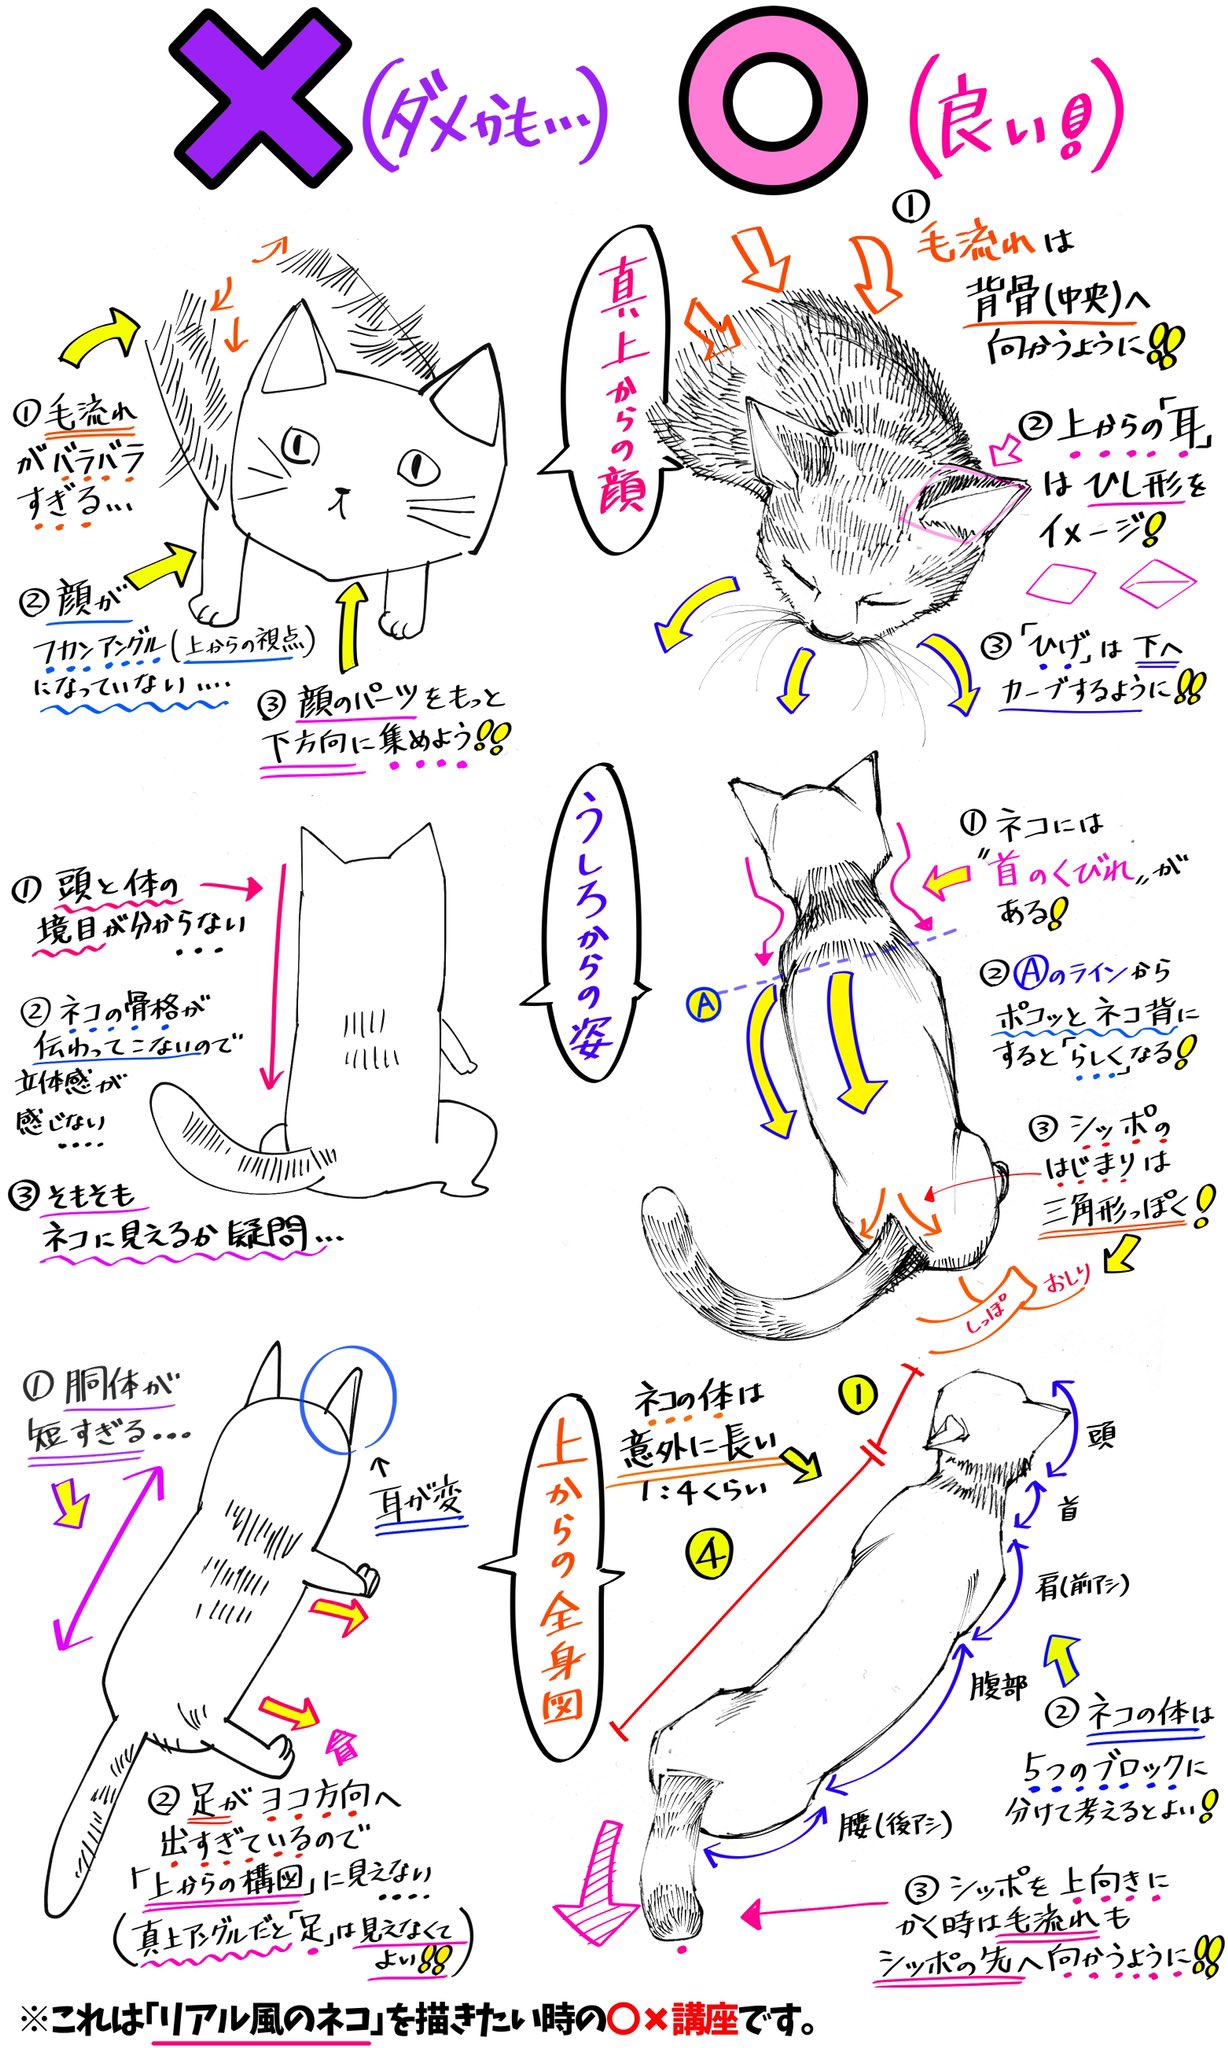 吉村拓也 イラスト講座 猫の描き方 リアルタッチの猫の絵 が上達する ダメかも と 良いかも